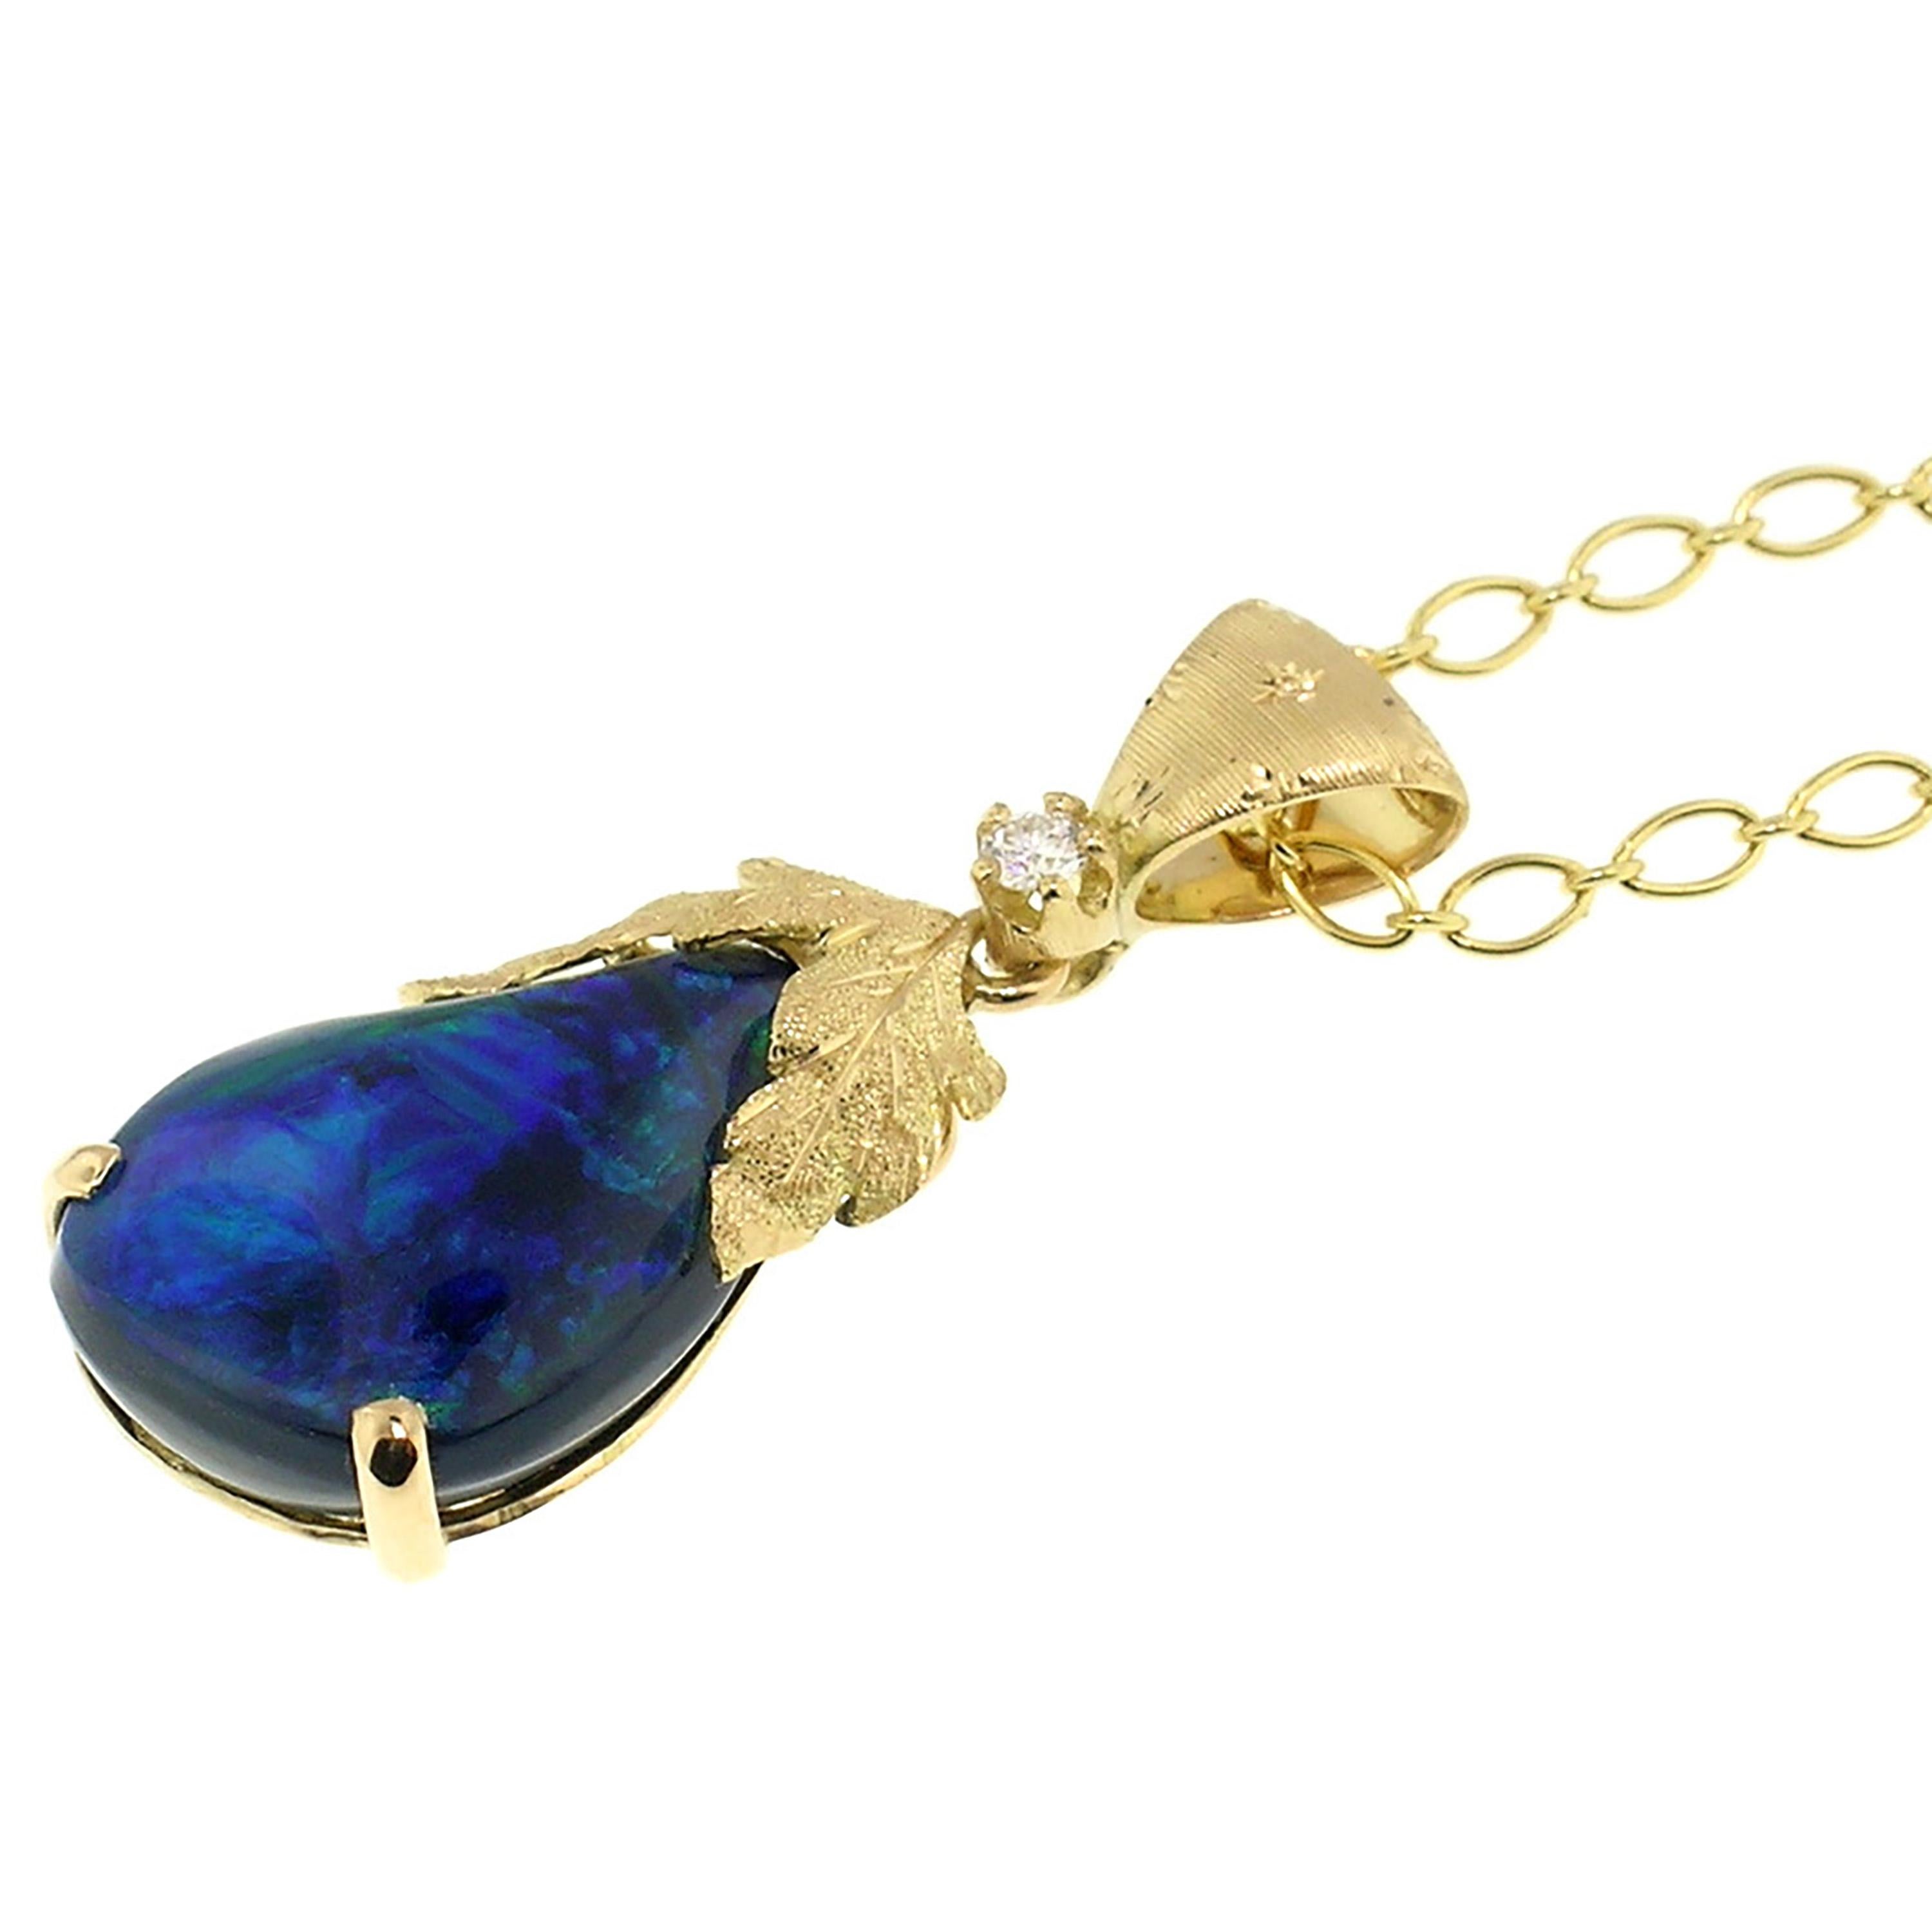 5.98 Karat Schwarzer Opal und 18 Karat Gold Handgravierte Halskette Handgemacht in Italien